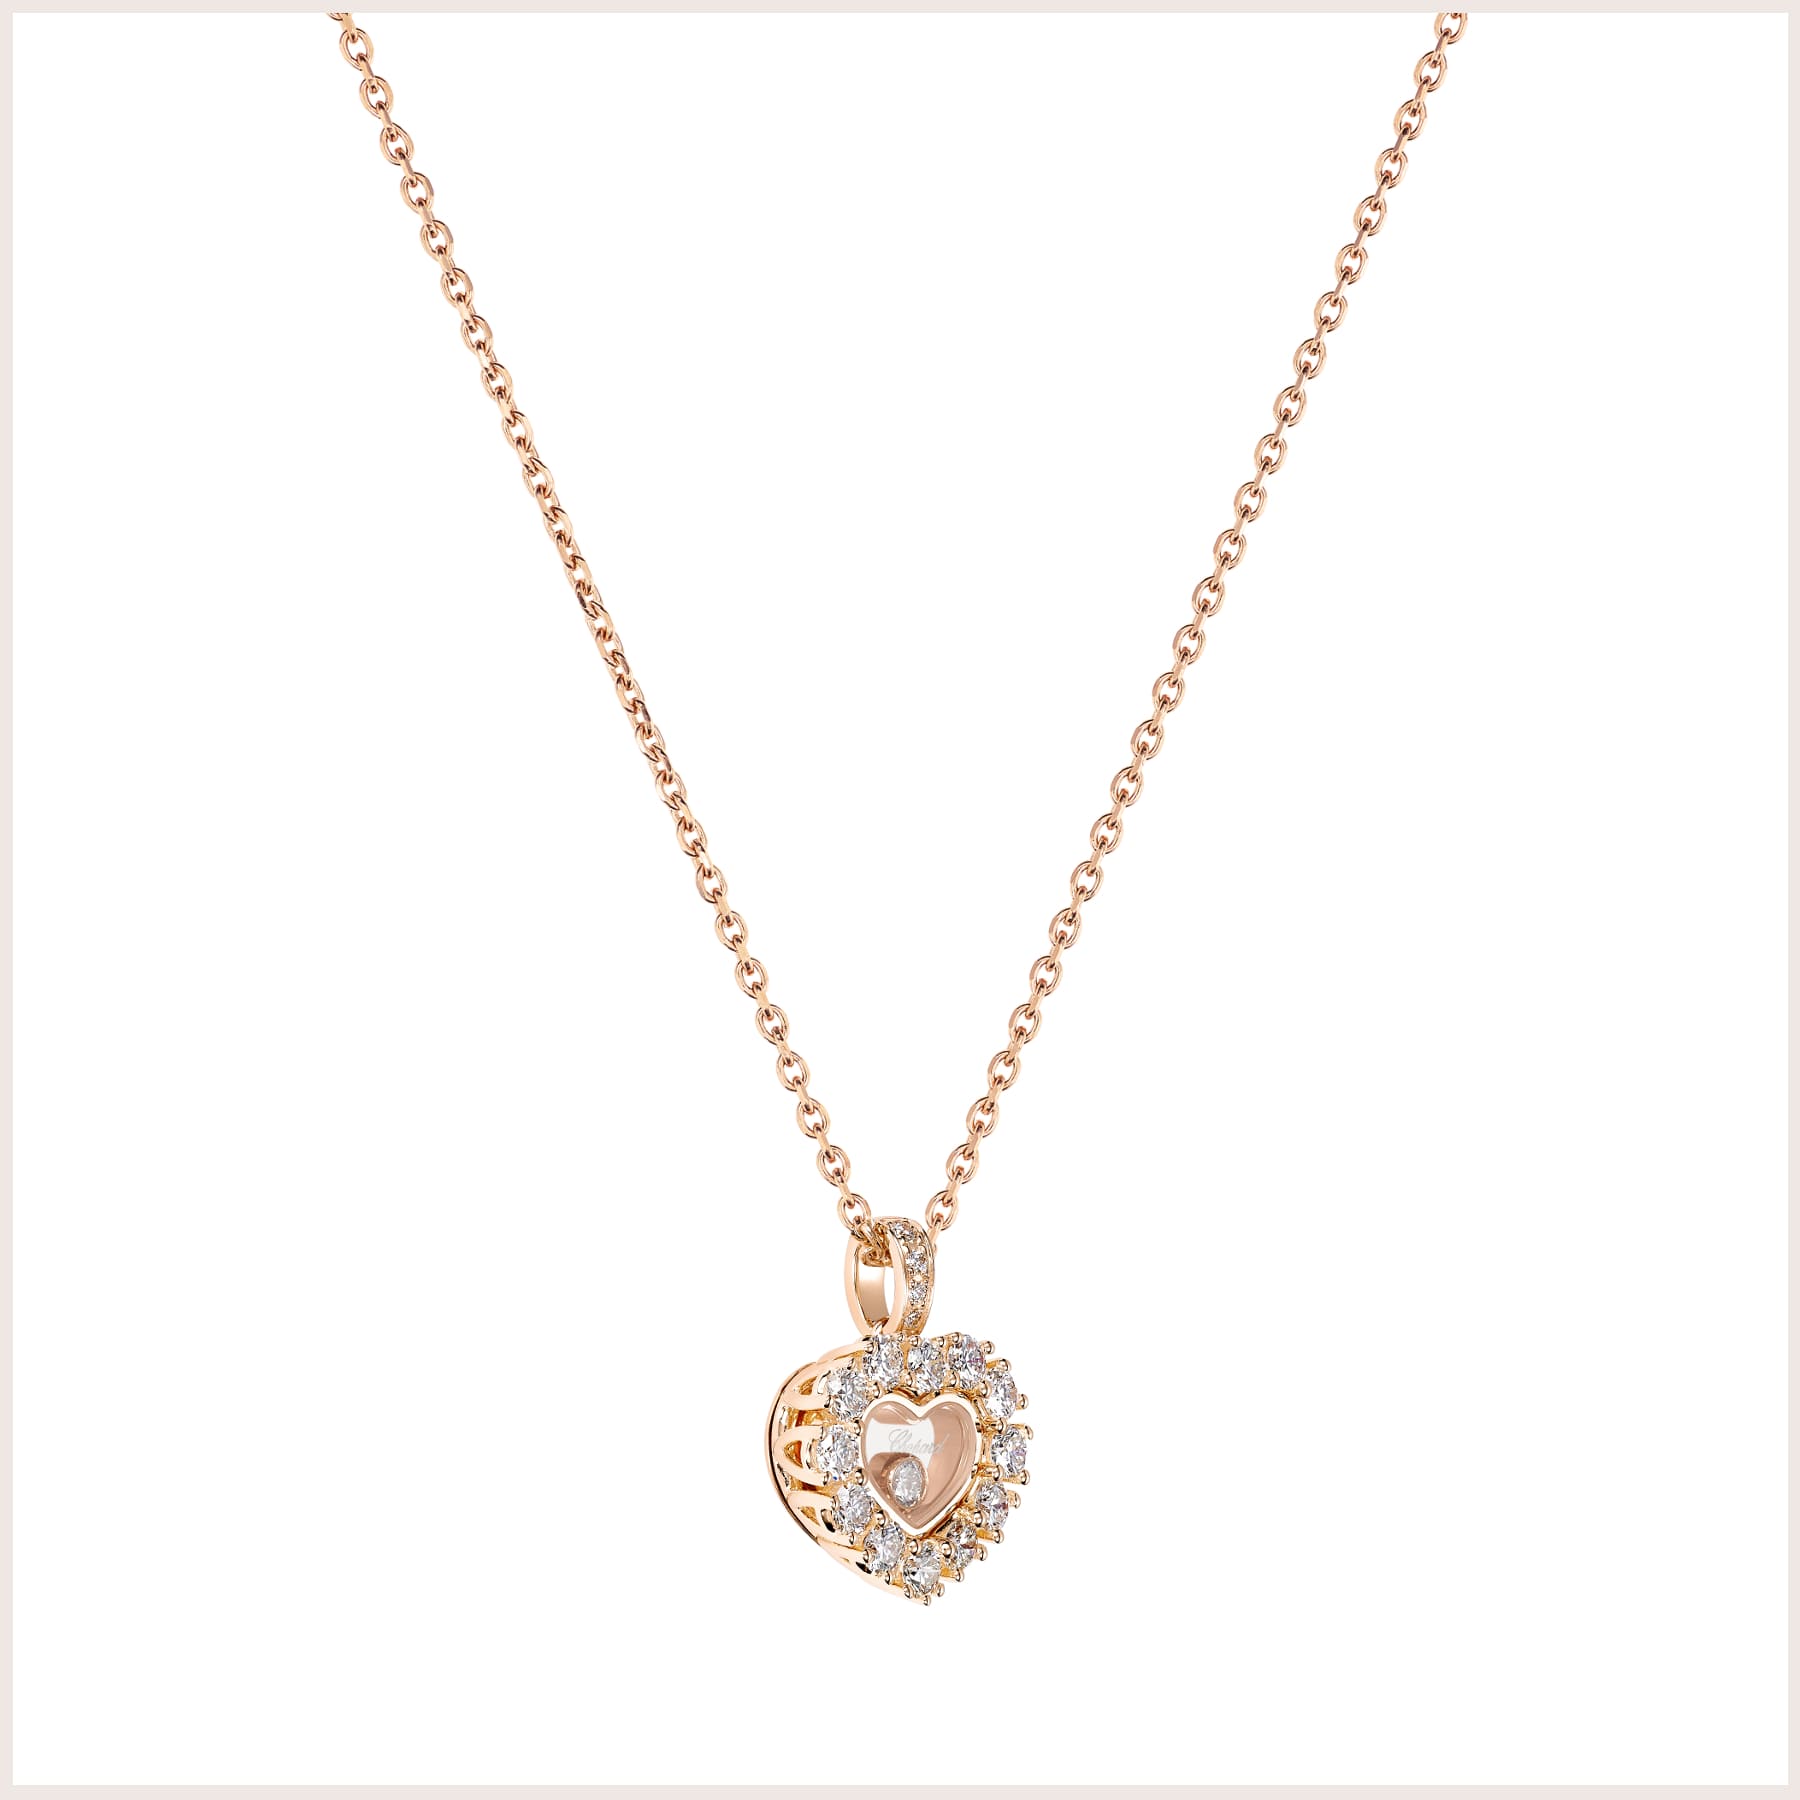 Leicht seitlicher Blick auf den Happy Diamonds Icons Joaillerie Anhaenger aus Rosegold in Herzform mit Diamanten